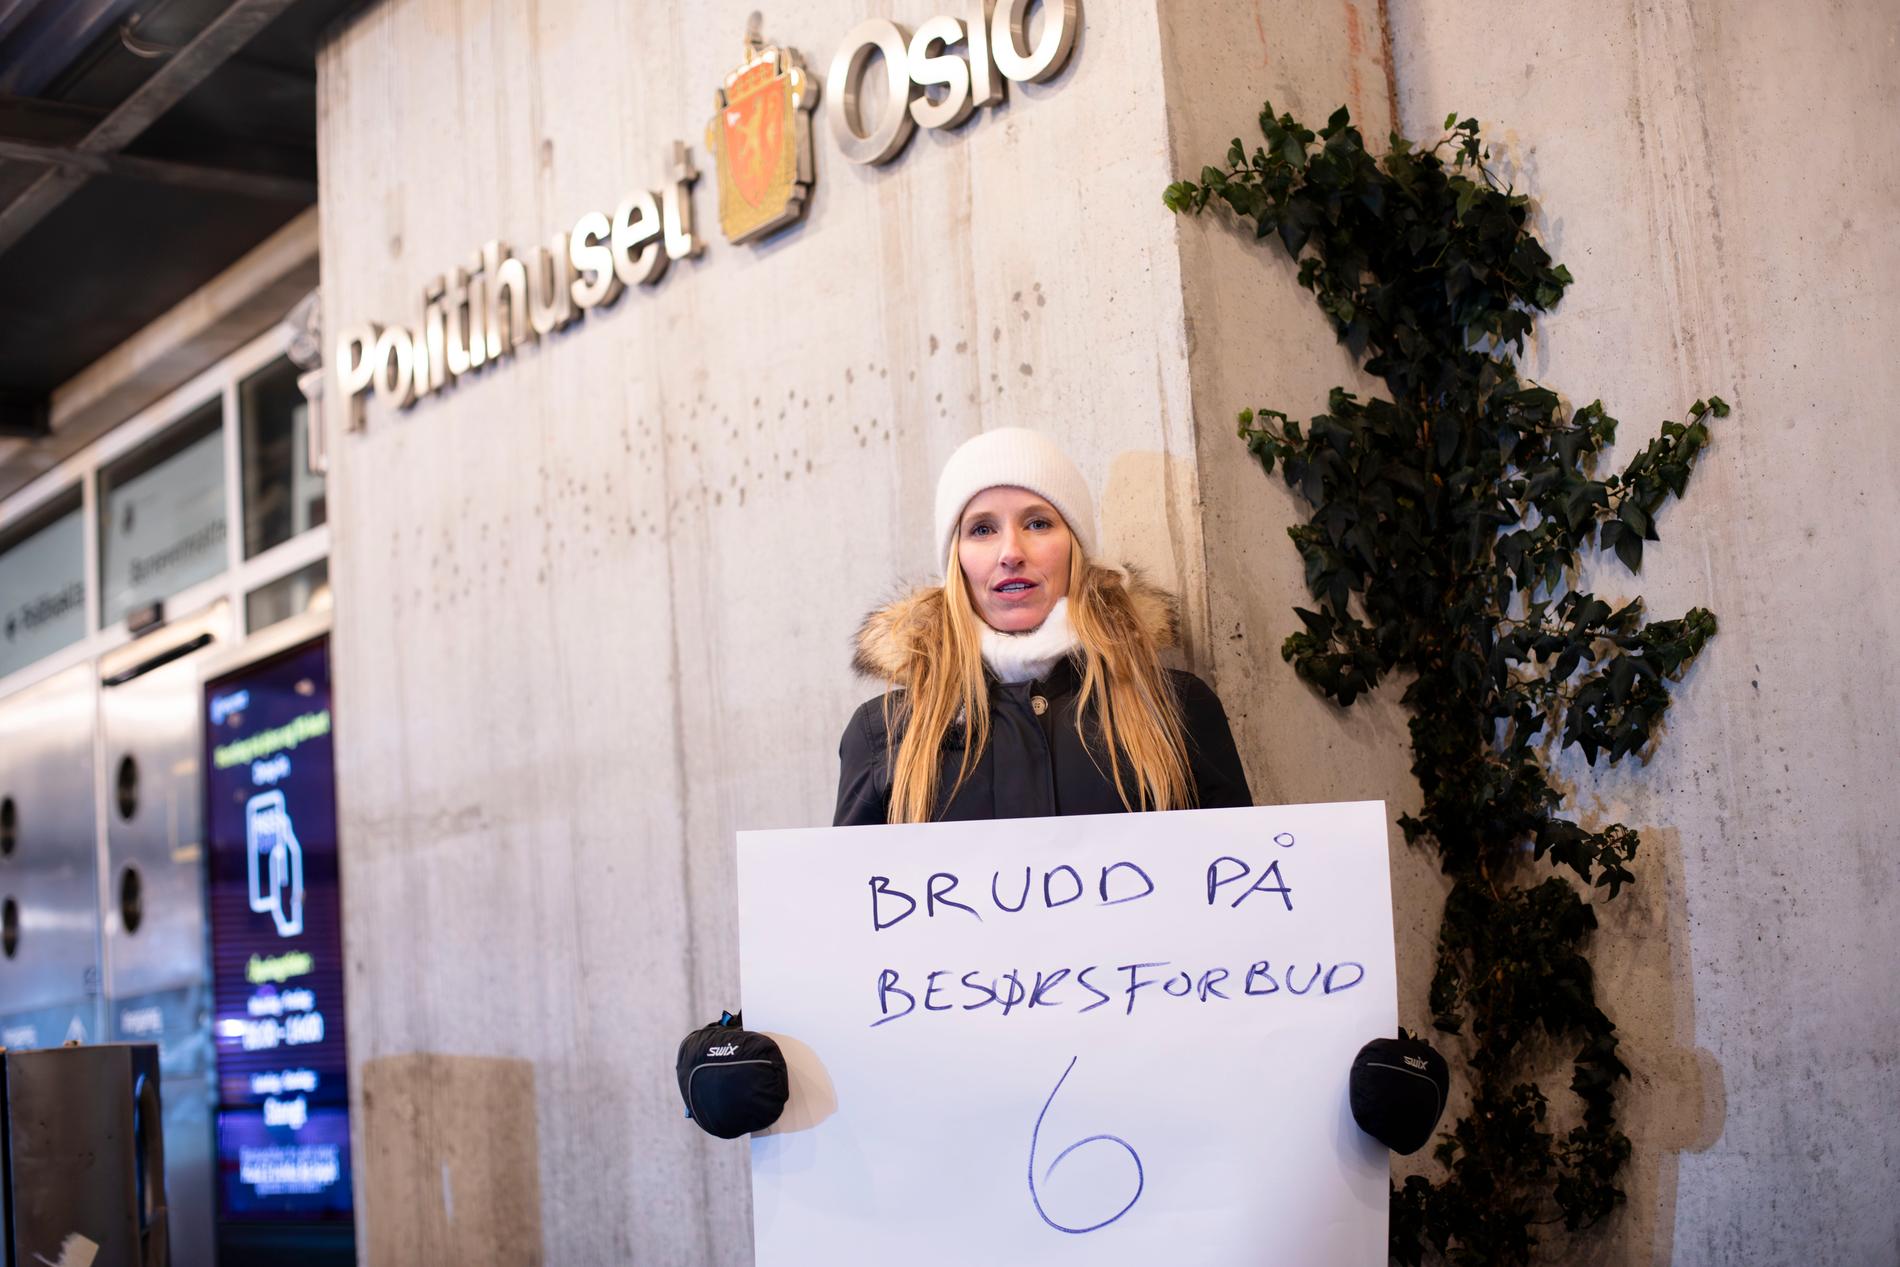 Line Kolstad Rødseth Demands Consequences for Violation of Restraining Order